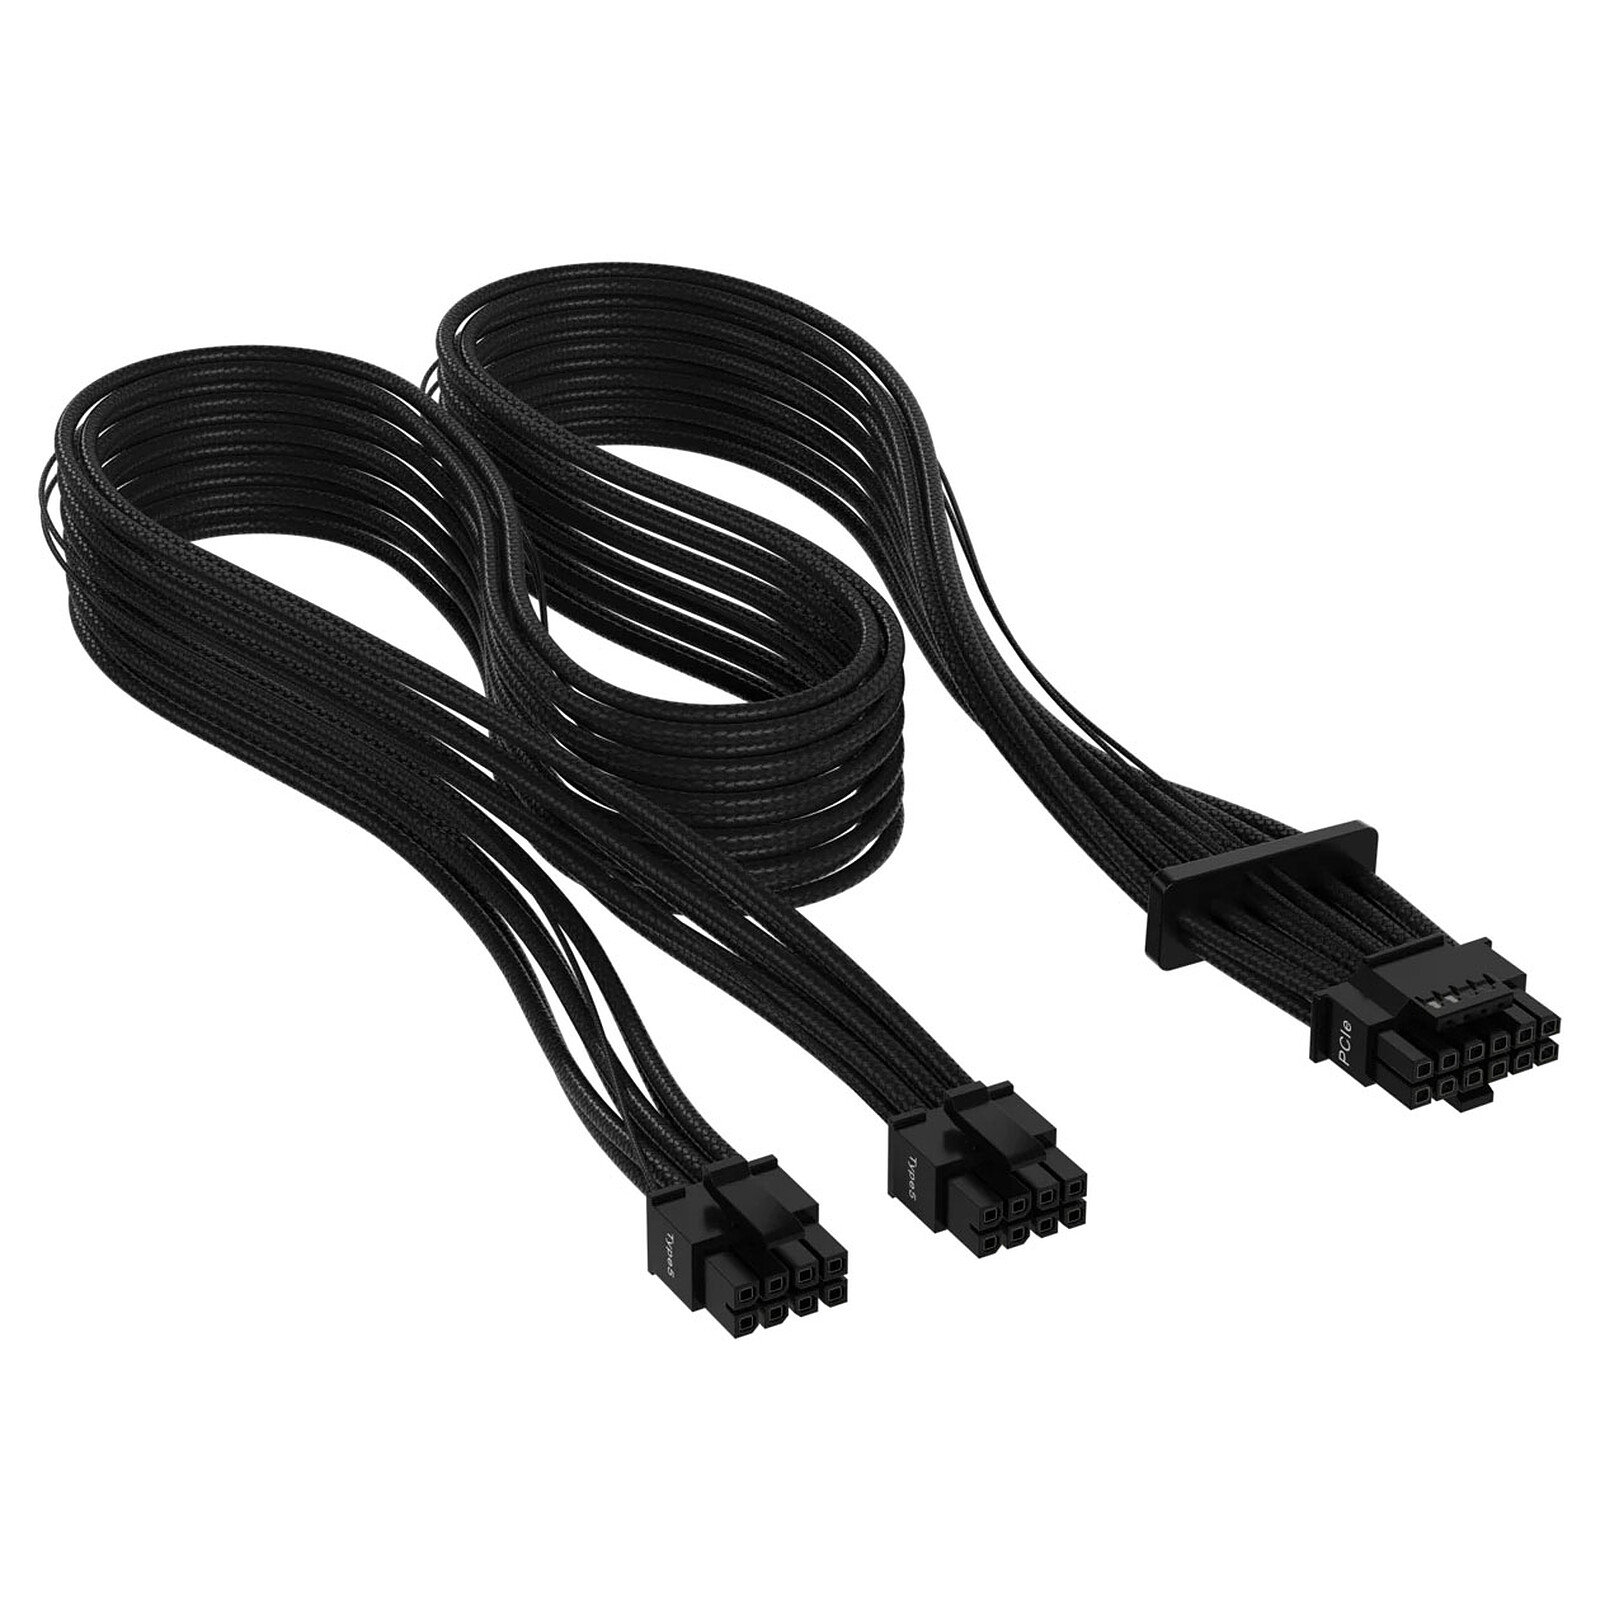 Gelid Câble Tressé PCIe 6+2 broches - 30 cm - Câble d'alimentation